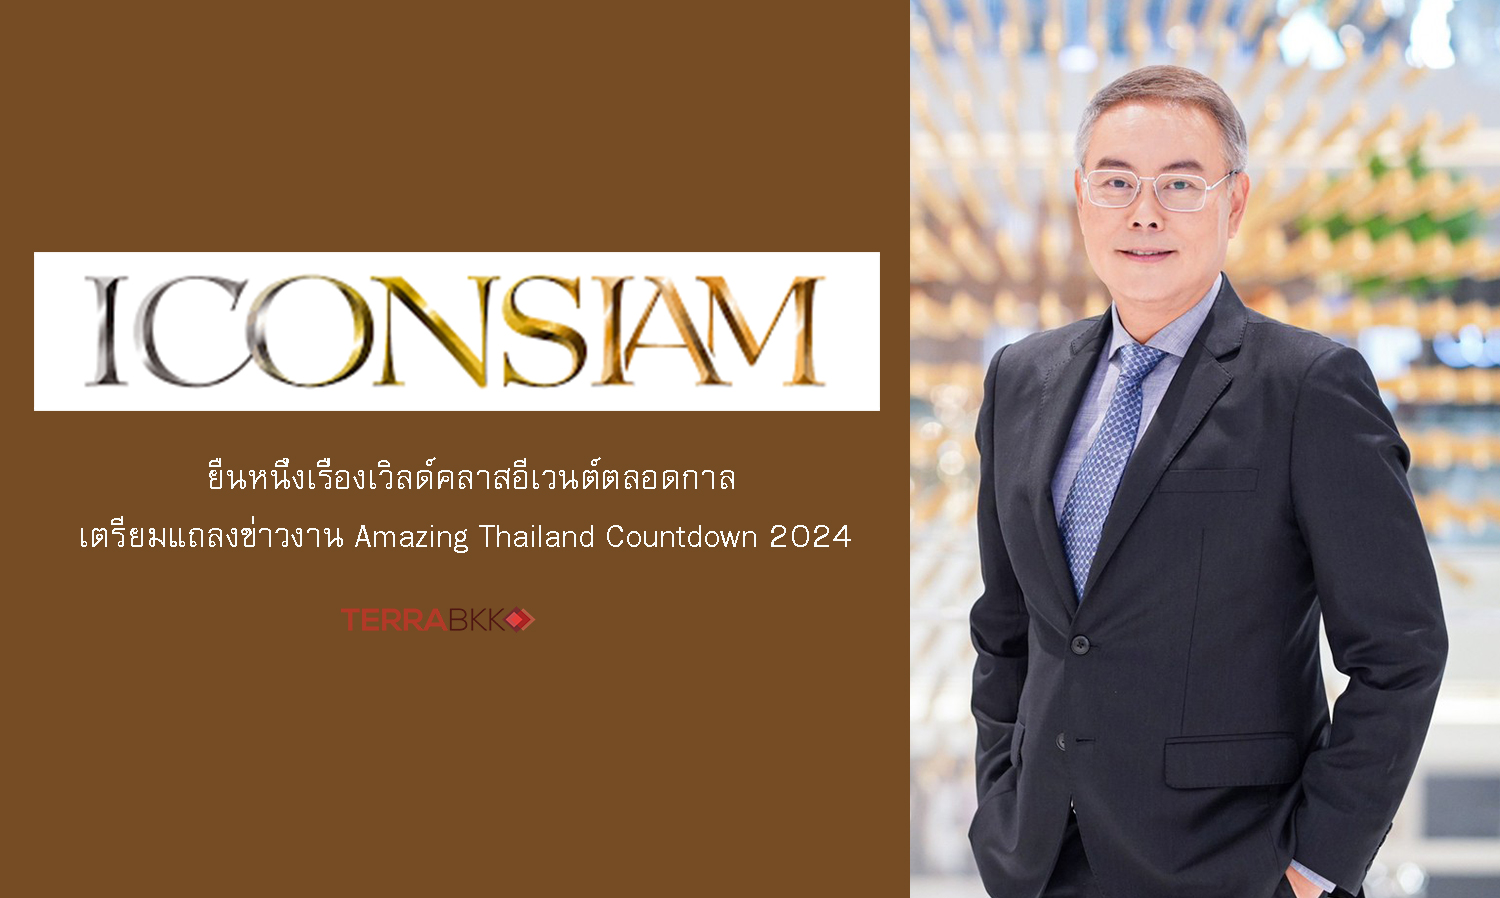 “ไอคอนสยาม” เตรียมแถลงข่าวงาน Amazing Thailand Countdown 2024  ประกาศอภิมหึมามหาปรากฏการณ์งานเคานต์ดาวน์จัดเต็มกว่าทุกปีที่เคยมีมา